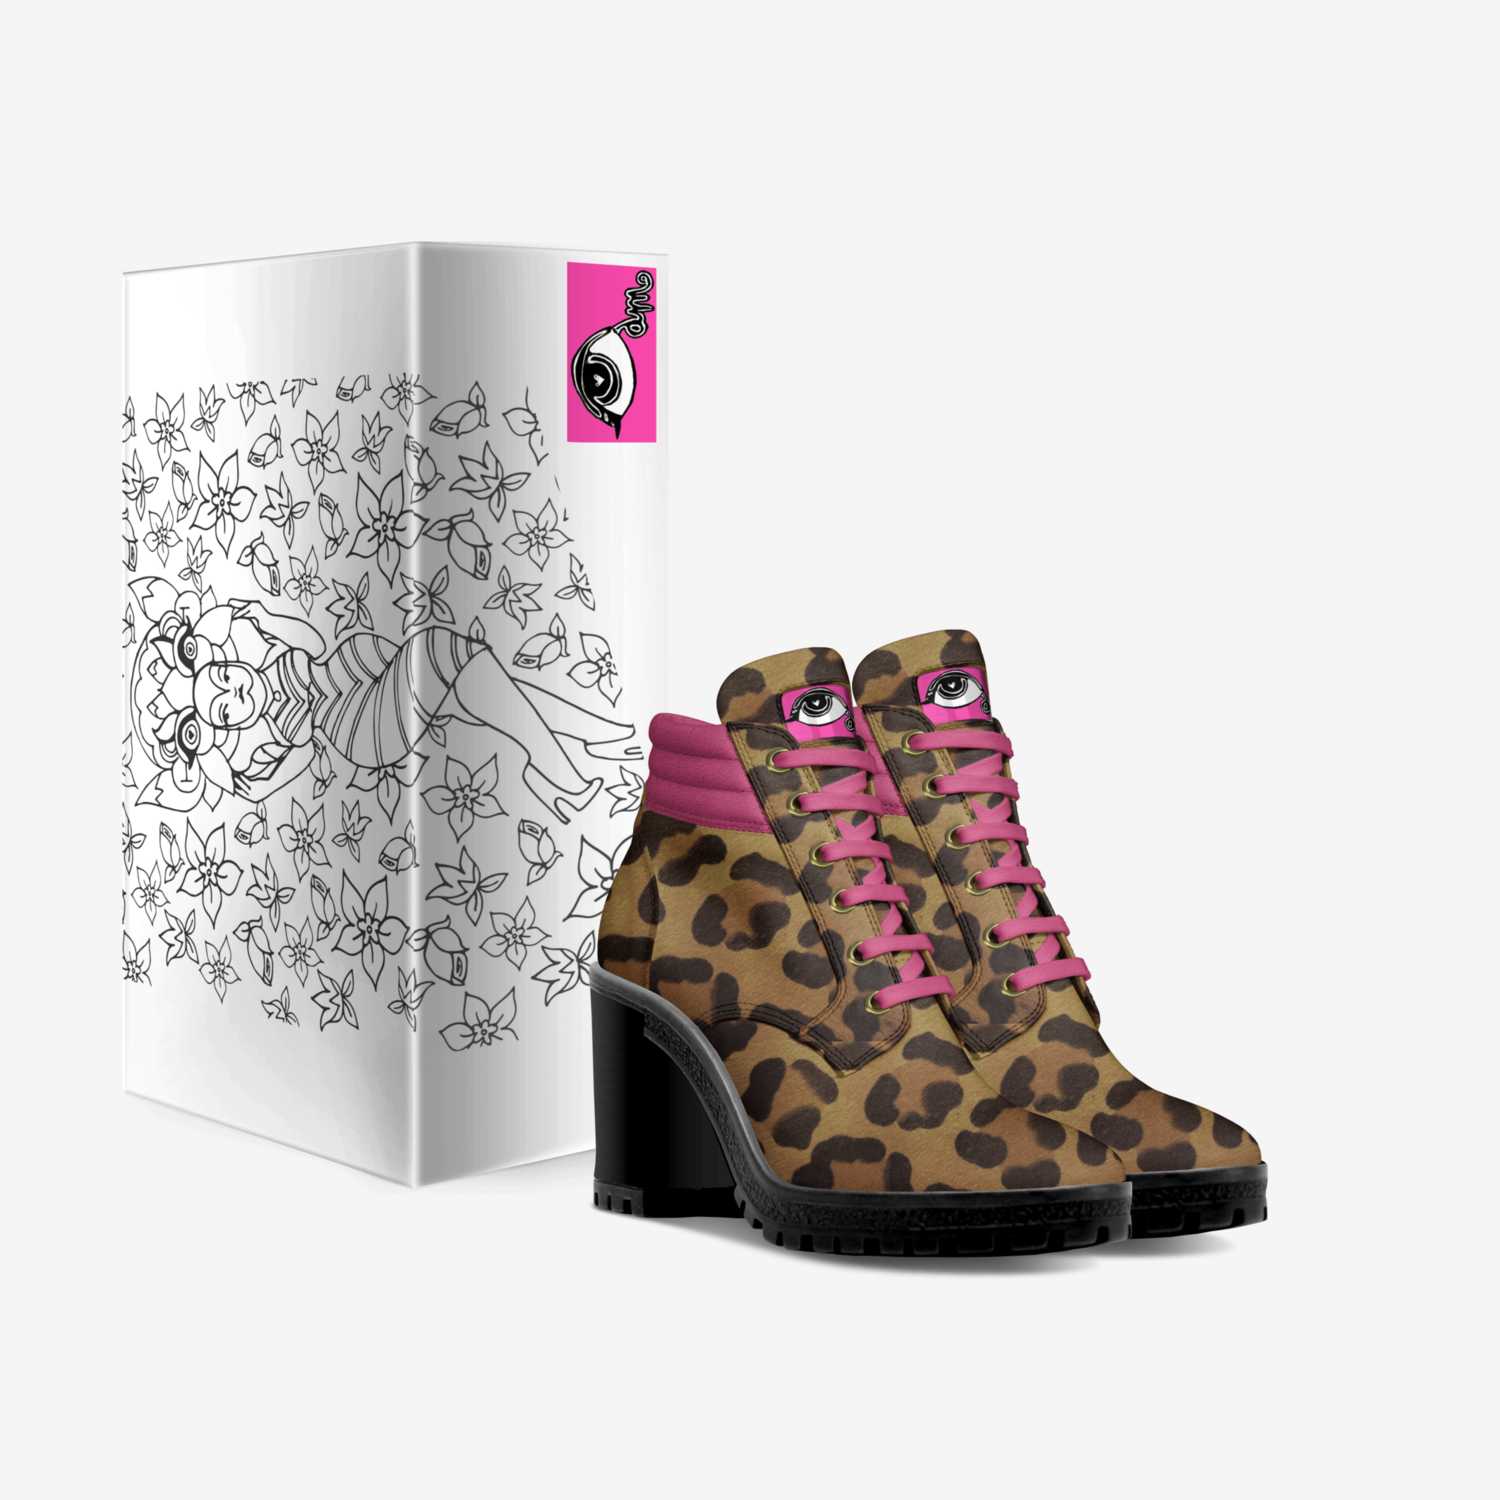 Il Sogno Leo custom made in Italy shoes by Ambrosia Sullivan | Box view